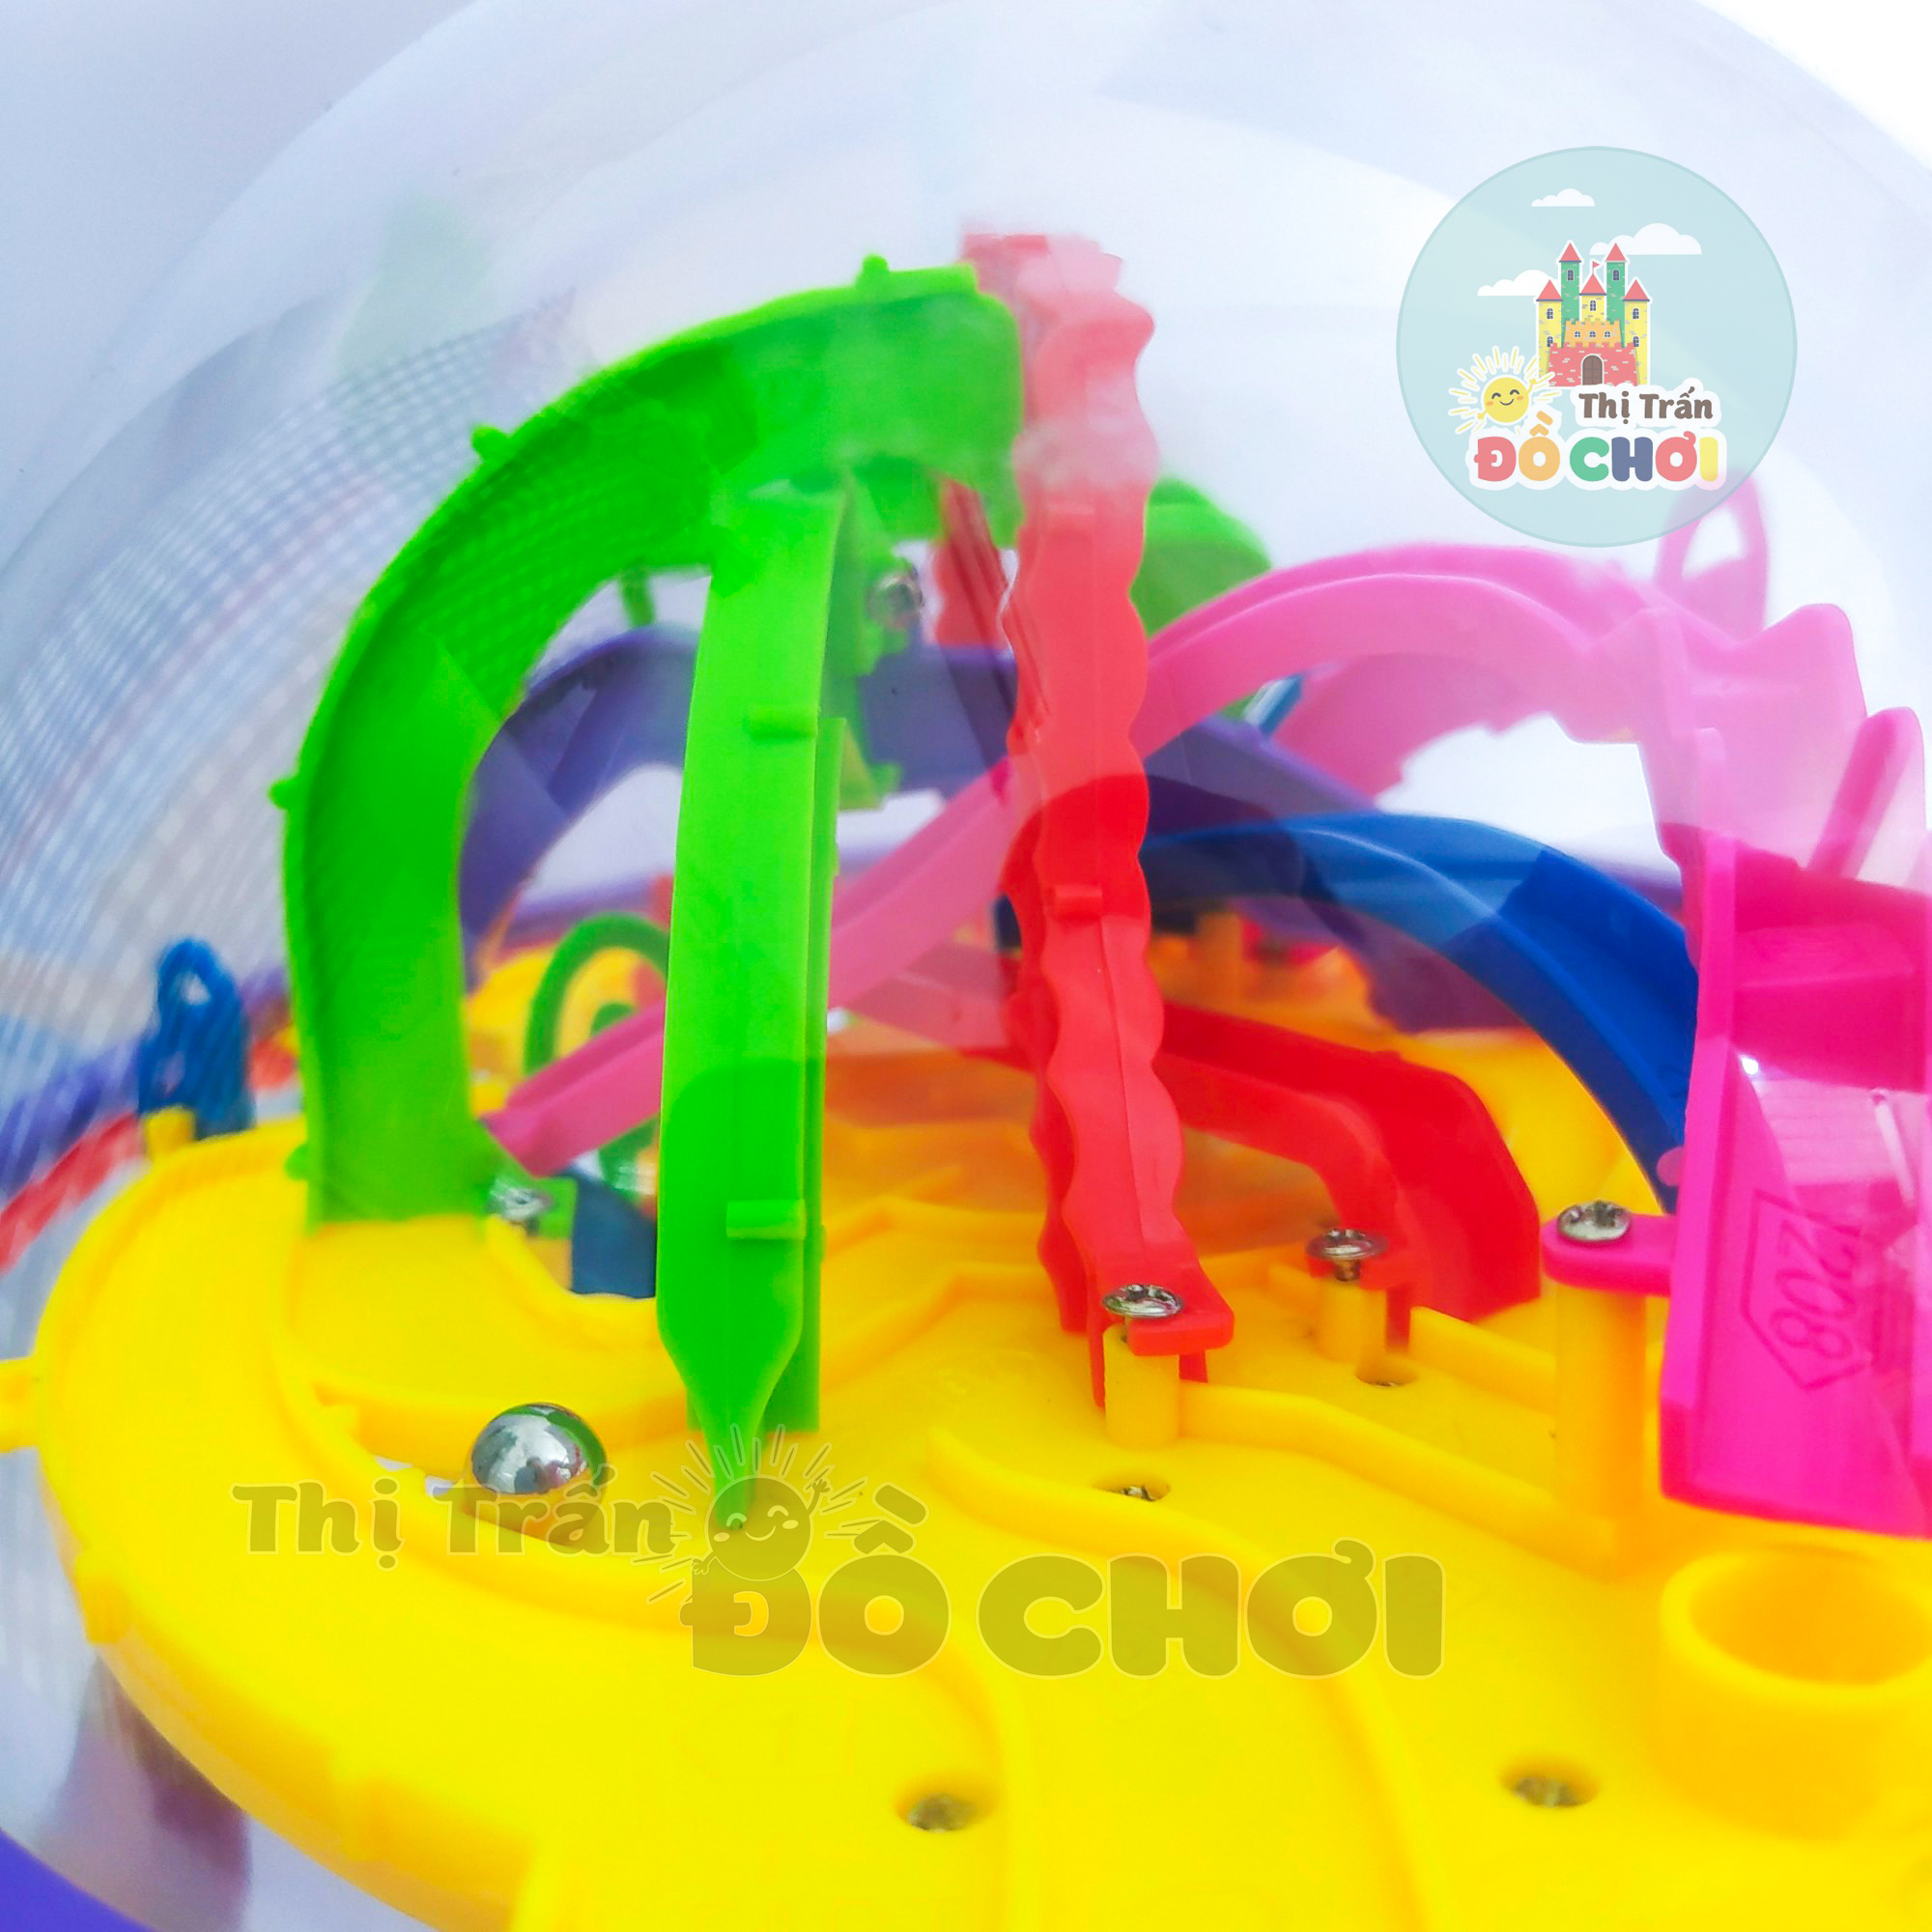 Bộ đồ chơi thông minh phát triển trí tuệ cho bé quả cầu mê cung không gian 3D Magic Maze Ball Kích Thước To 20cm 71-01